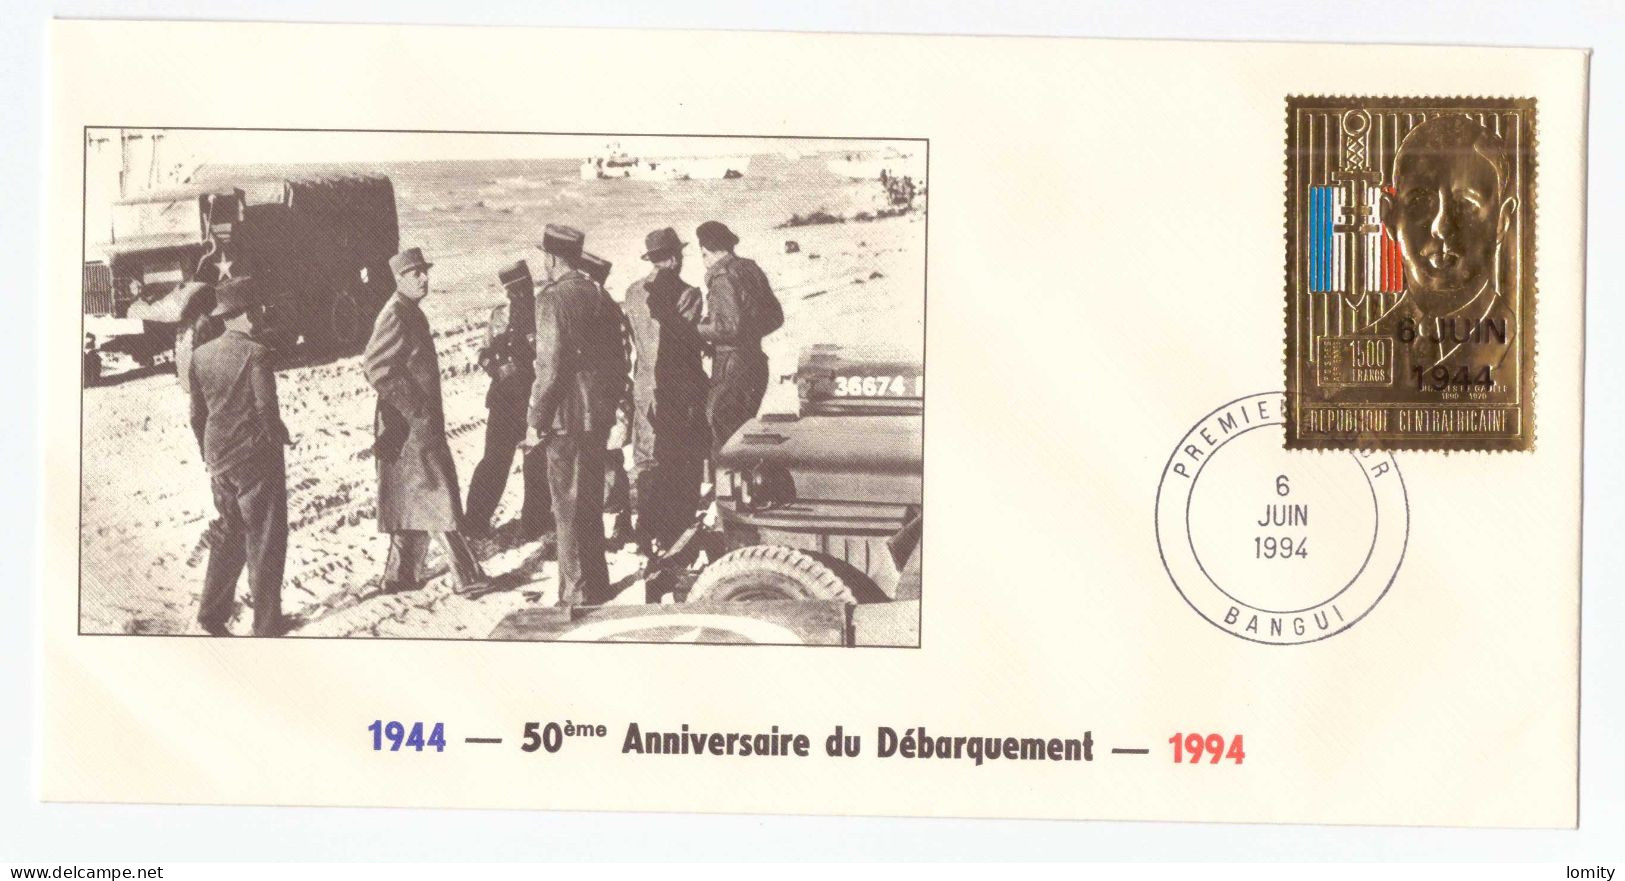 FDC Republique Centrafricaine Bangui 50e Anniversaire Débarquement 1944 Timbre OR Gold 6 Juin 1994 Charles De Gaulle - Guerre Mondiale (Seconde)